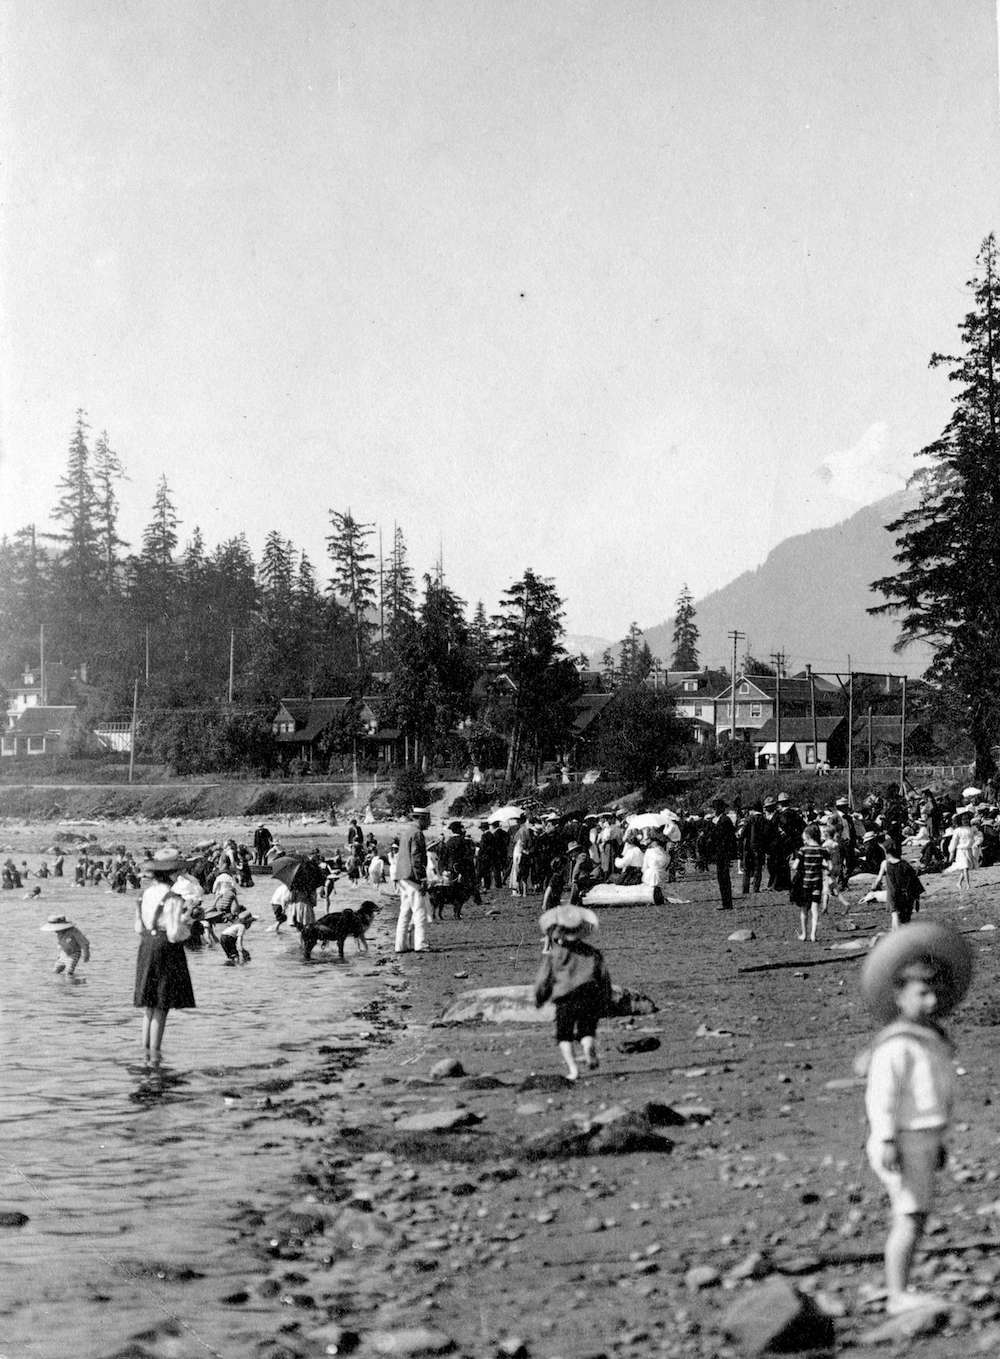 1904-English Bay Bathing Beach